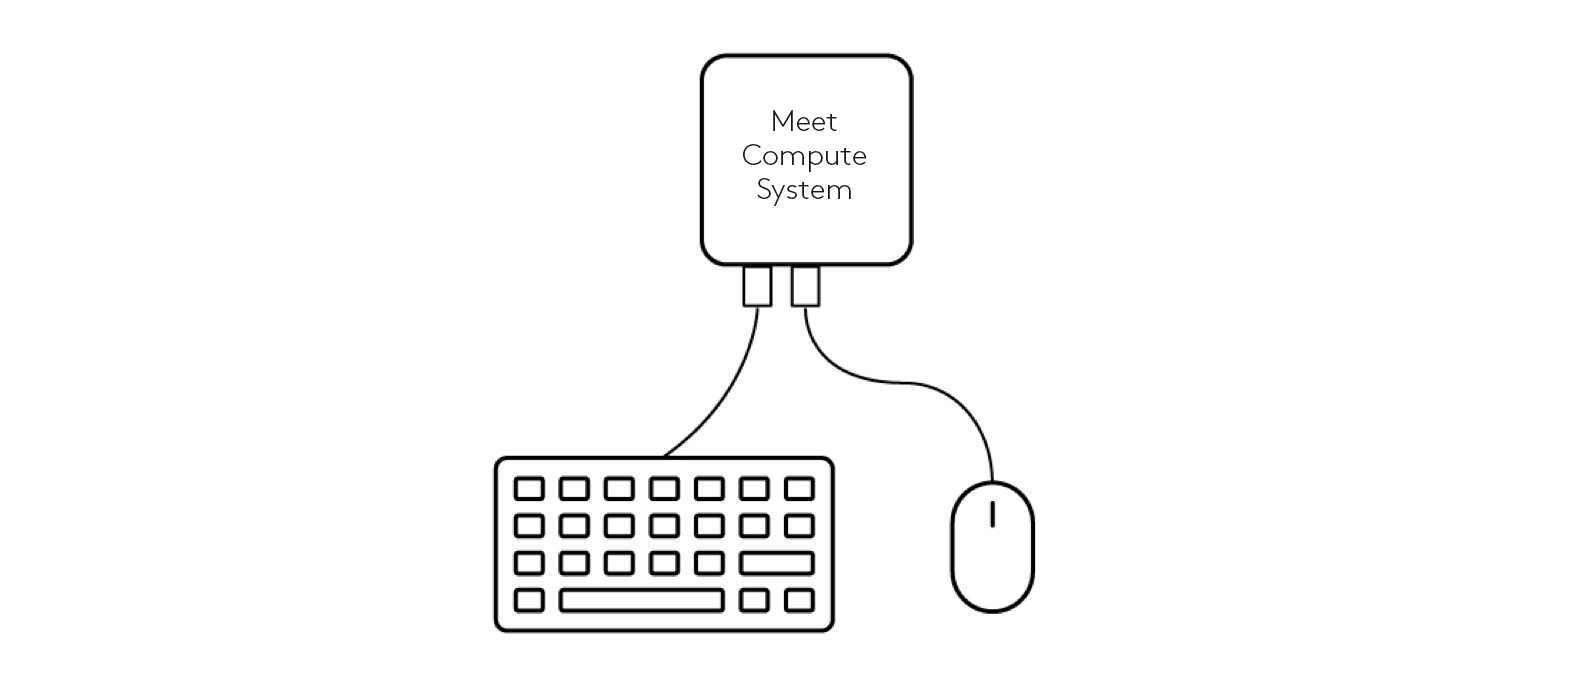 Schéma de connexion du clavier et de la souris au système Meet Compute